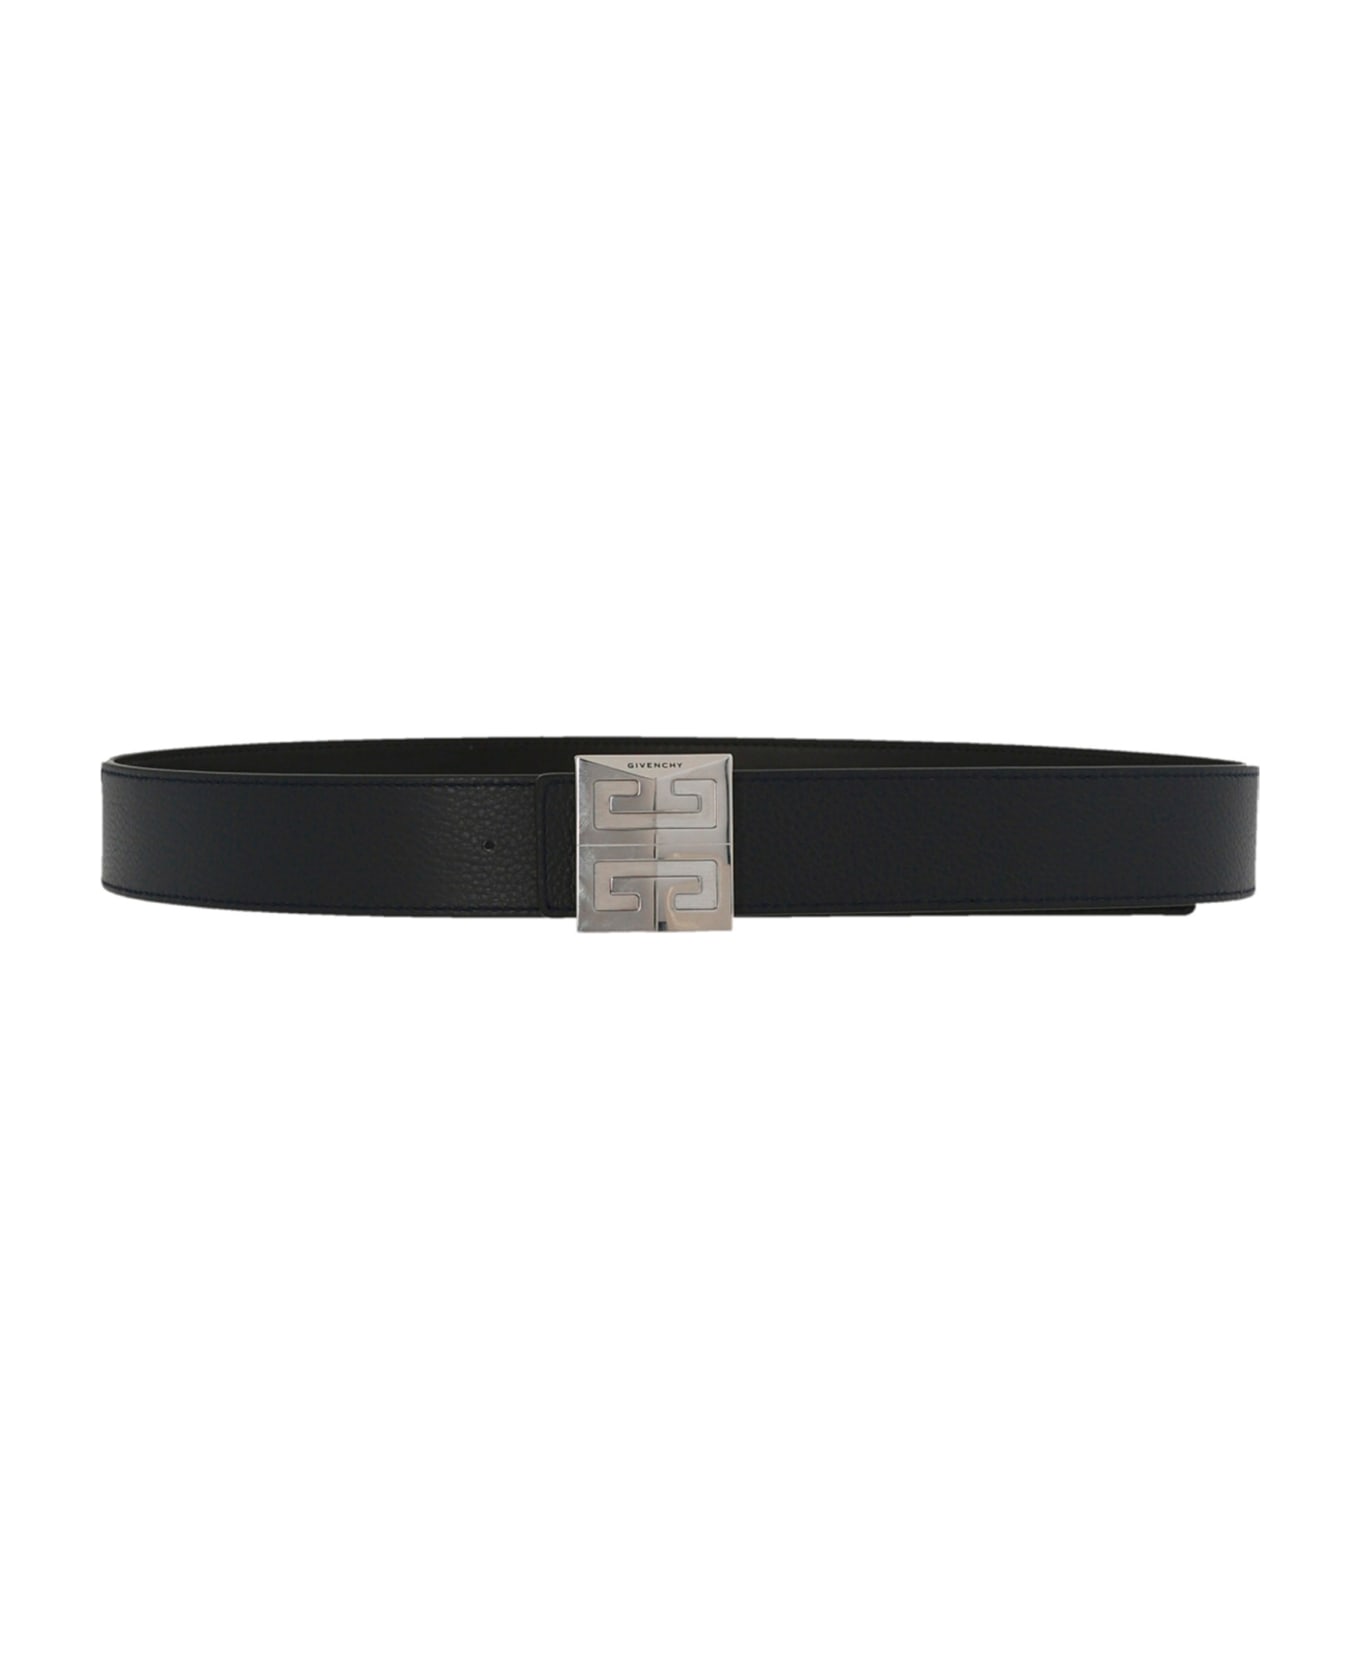 Givenchy 4g Reversible Belt - Black Dark Blue